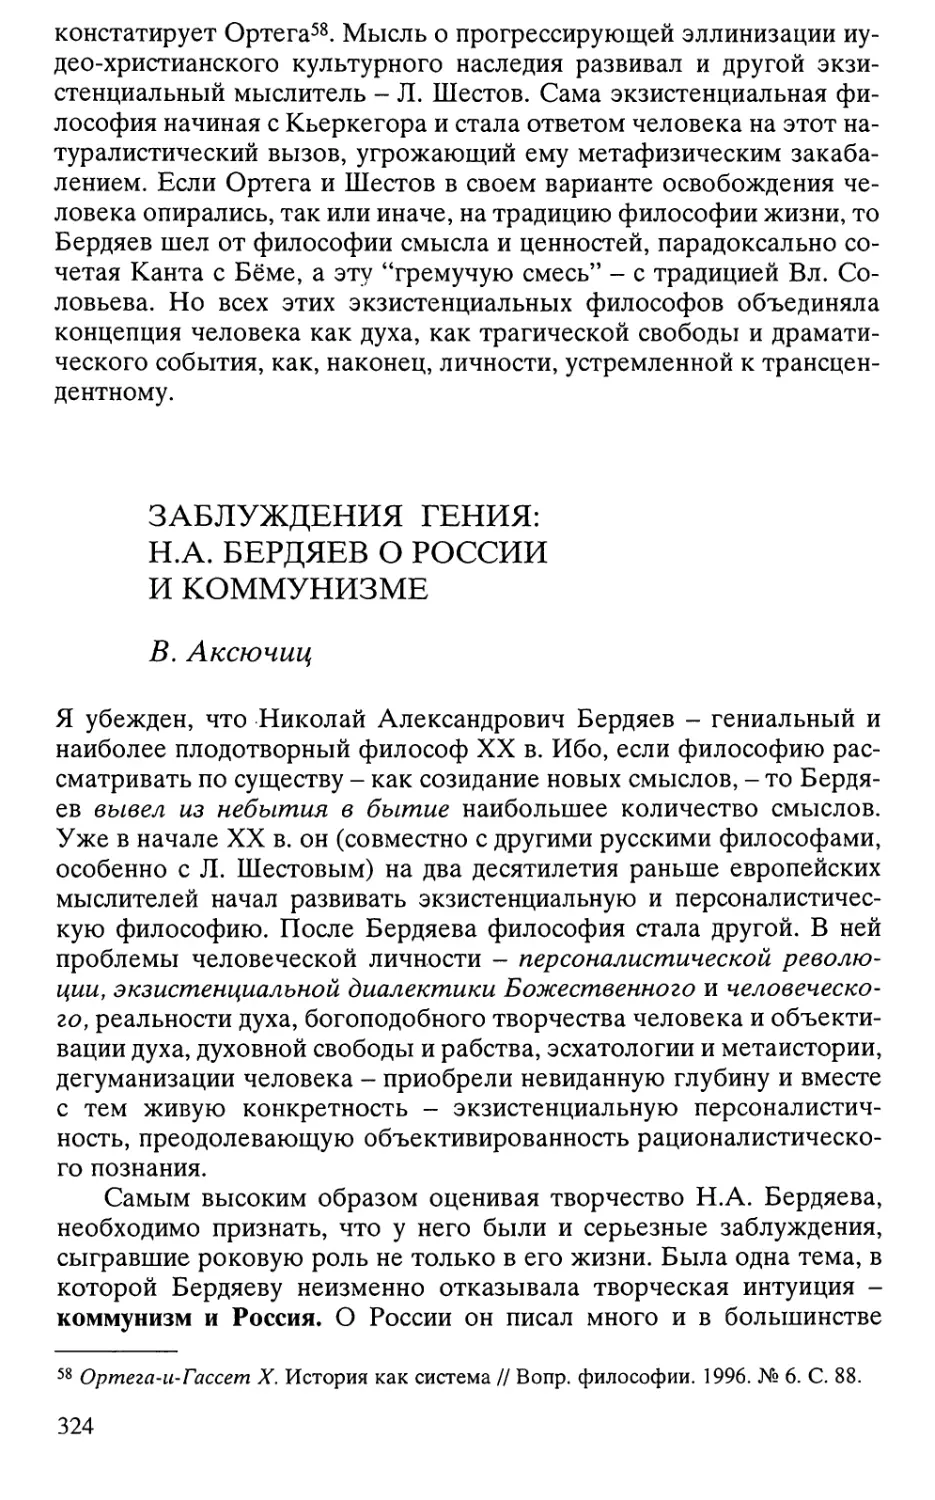 Аксючиц В. Заблуждения гения: H.A. Бердяев о России и коммунизме